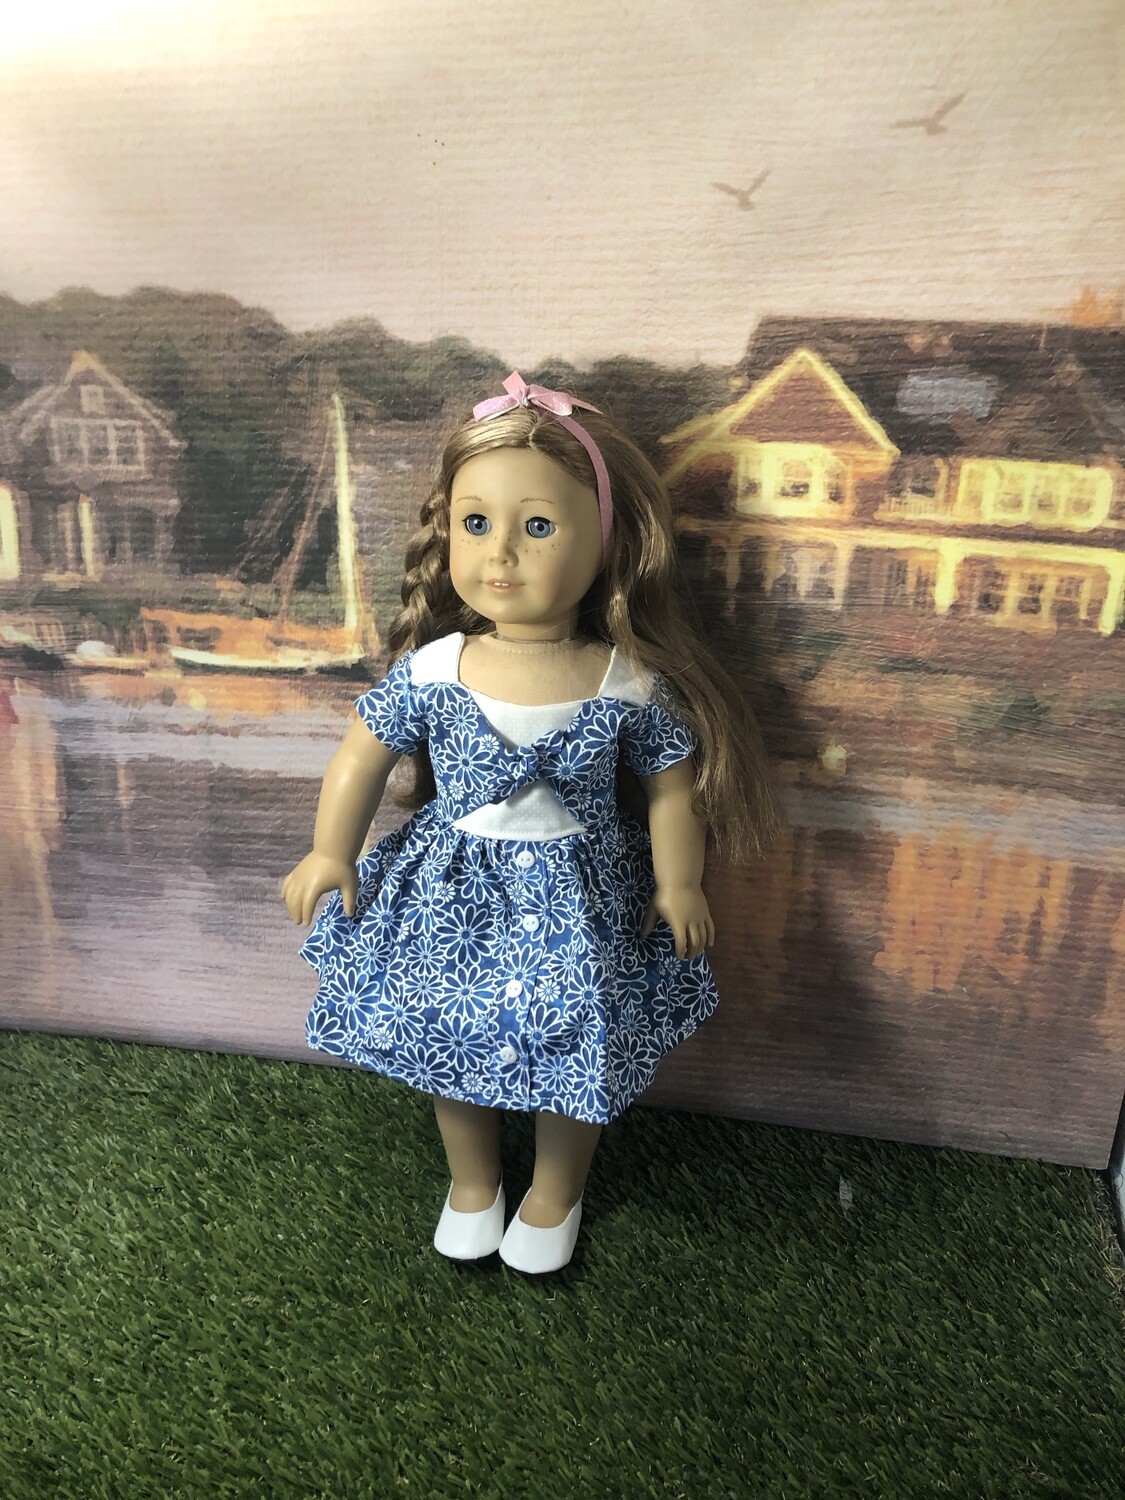 Judith: AG Doll Custom OOAK doll

